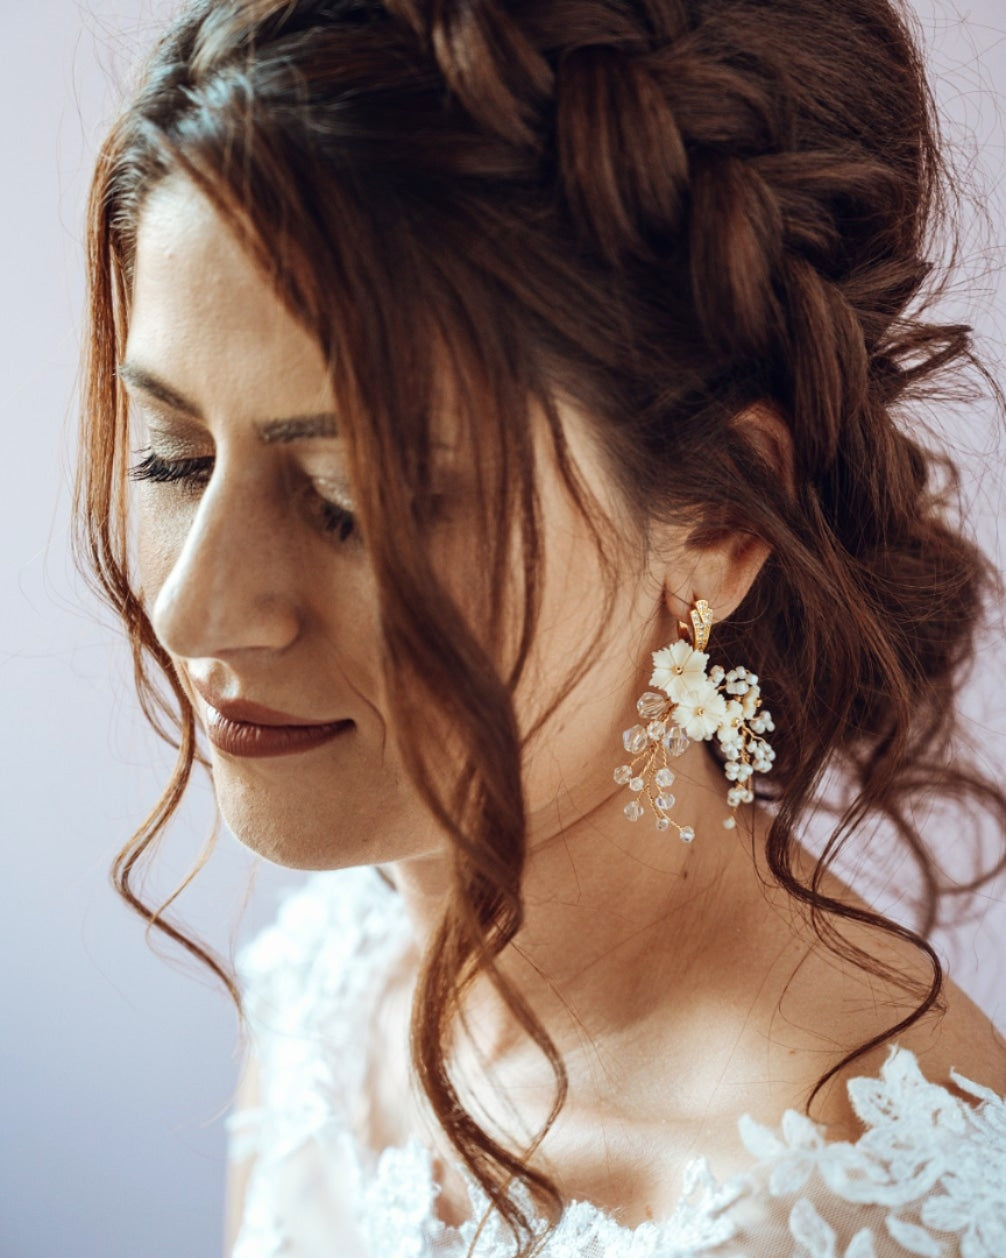 FANTAZIA  EARRINGS - Bridal flower earrings / Wedding jewelry / Engagement jewelry / Bridesmaid gift / Flower drop earrings